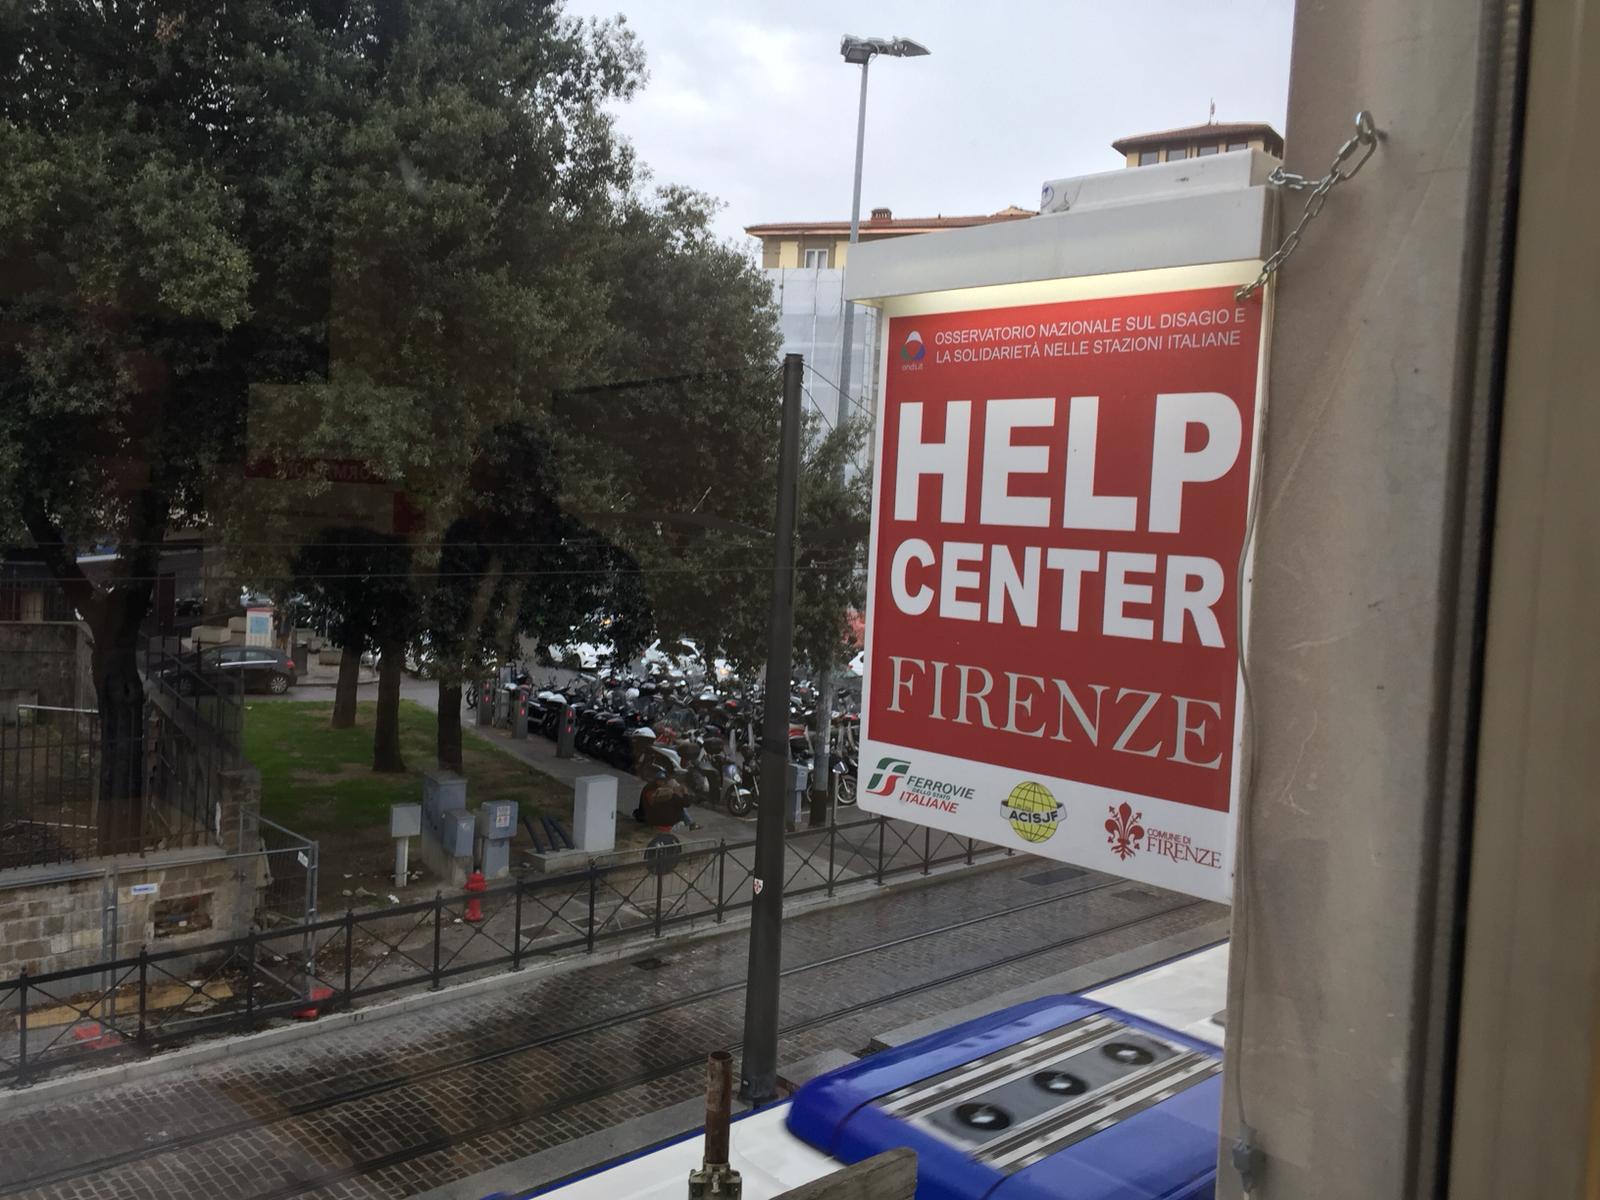 Inaugurato Help Center in stazione Firenze per i senza dimora